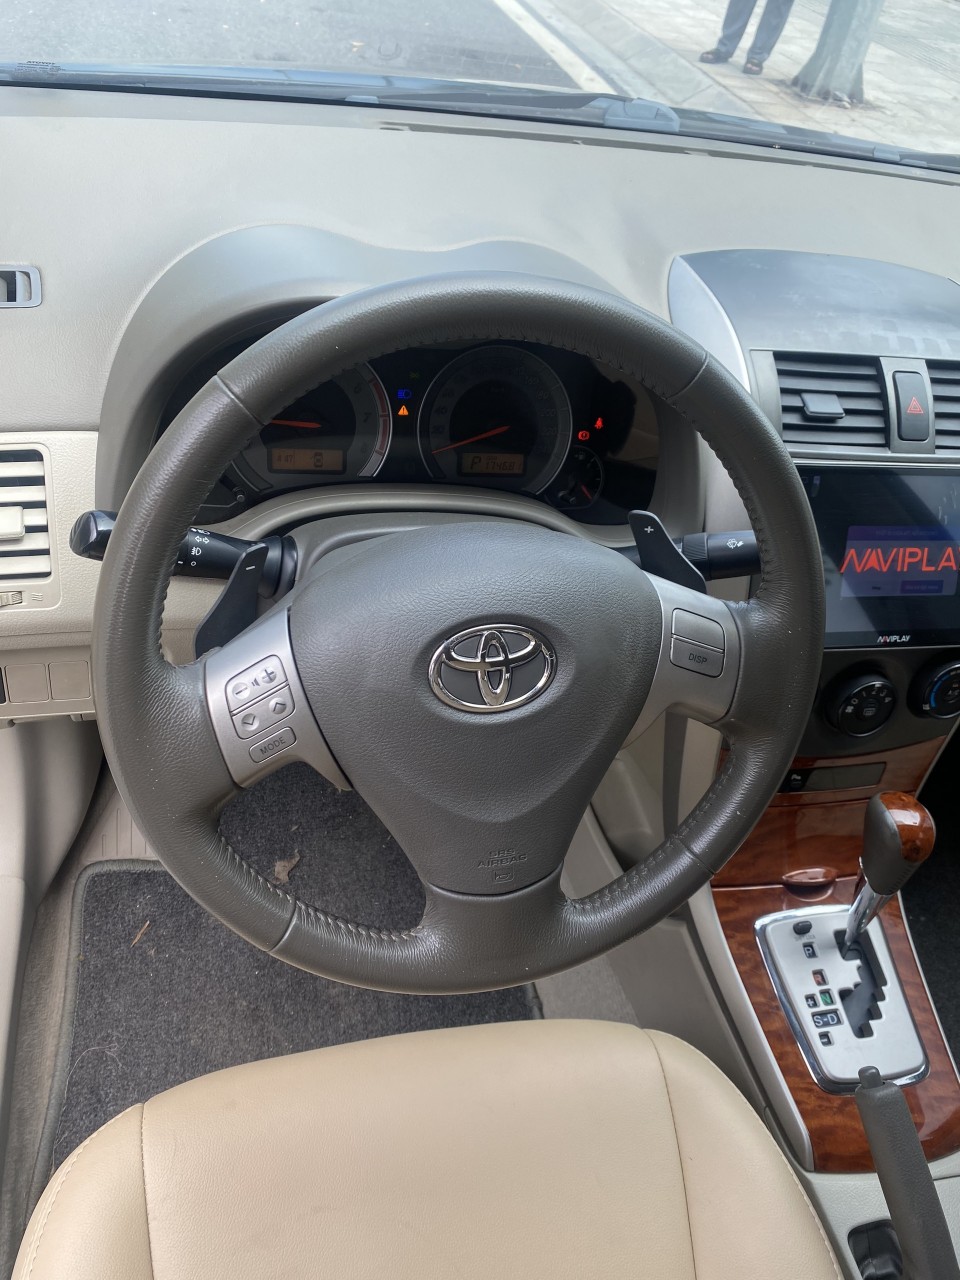 Toyota Corolla Altis 2.0V AT sản xuất 2010 đẹp nguyên zin đăng ký tư nhân.-6